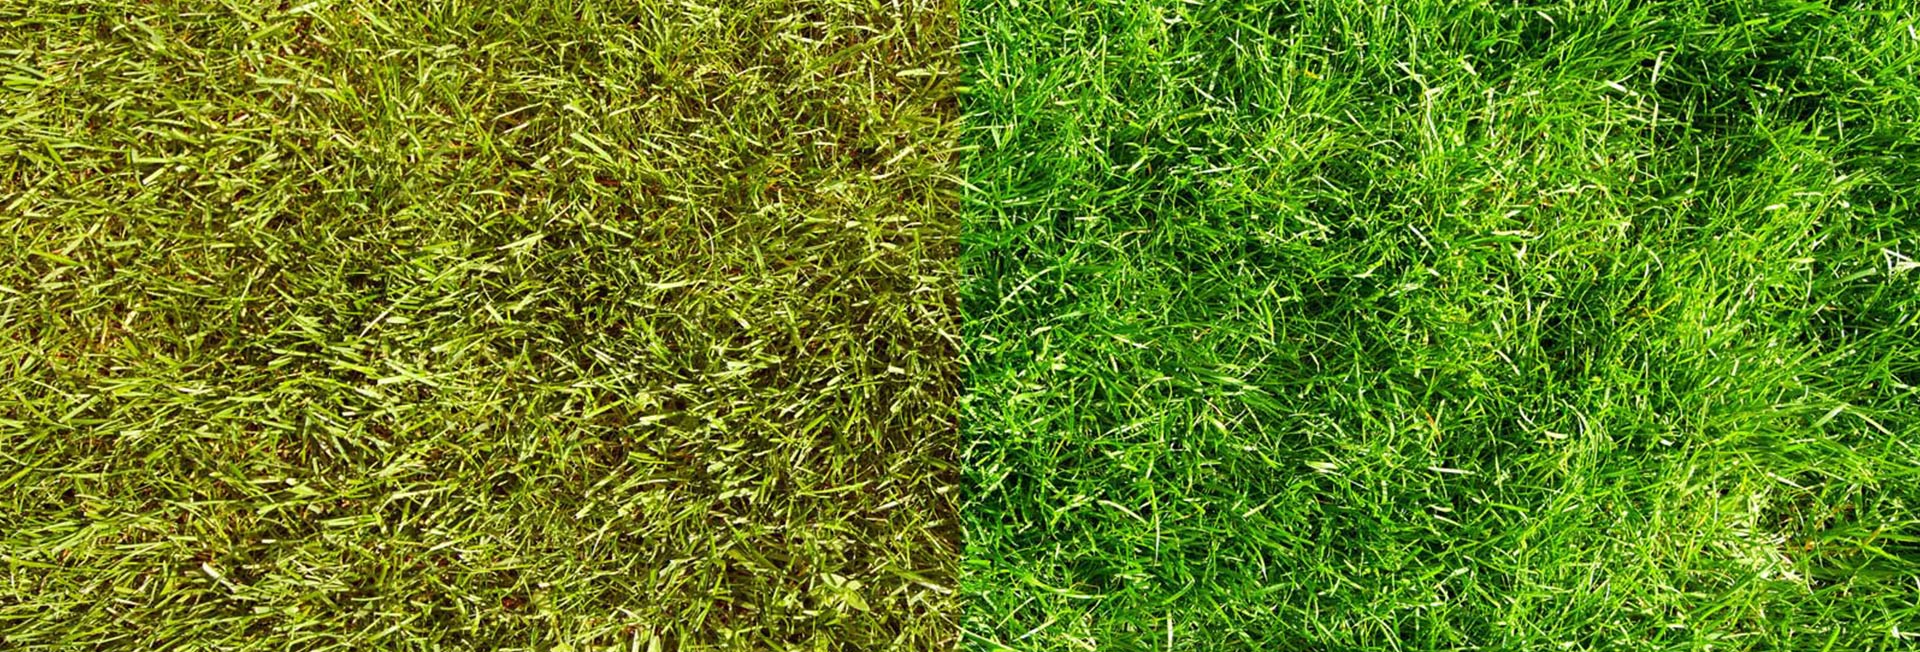 Как добиться зеленой травы: Советы по уходу за газоном